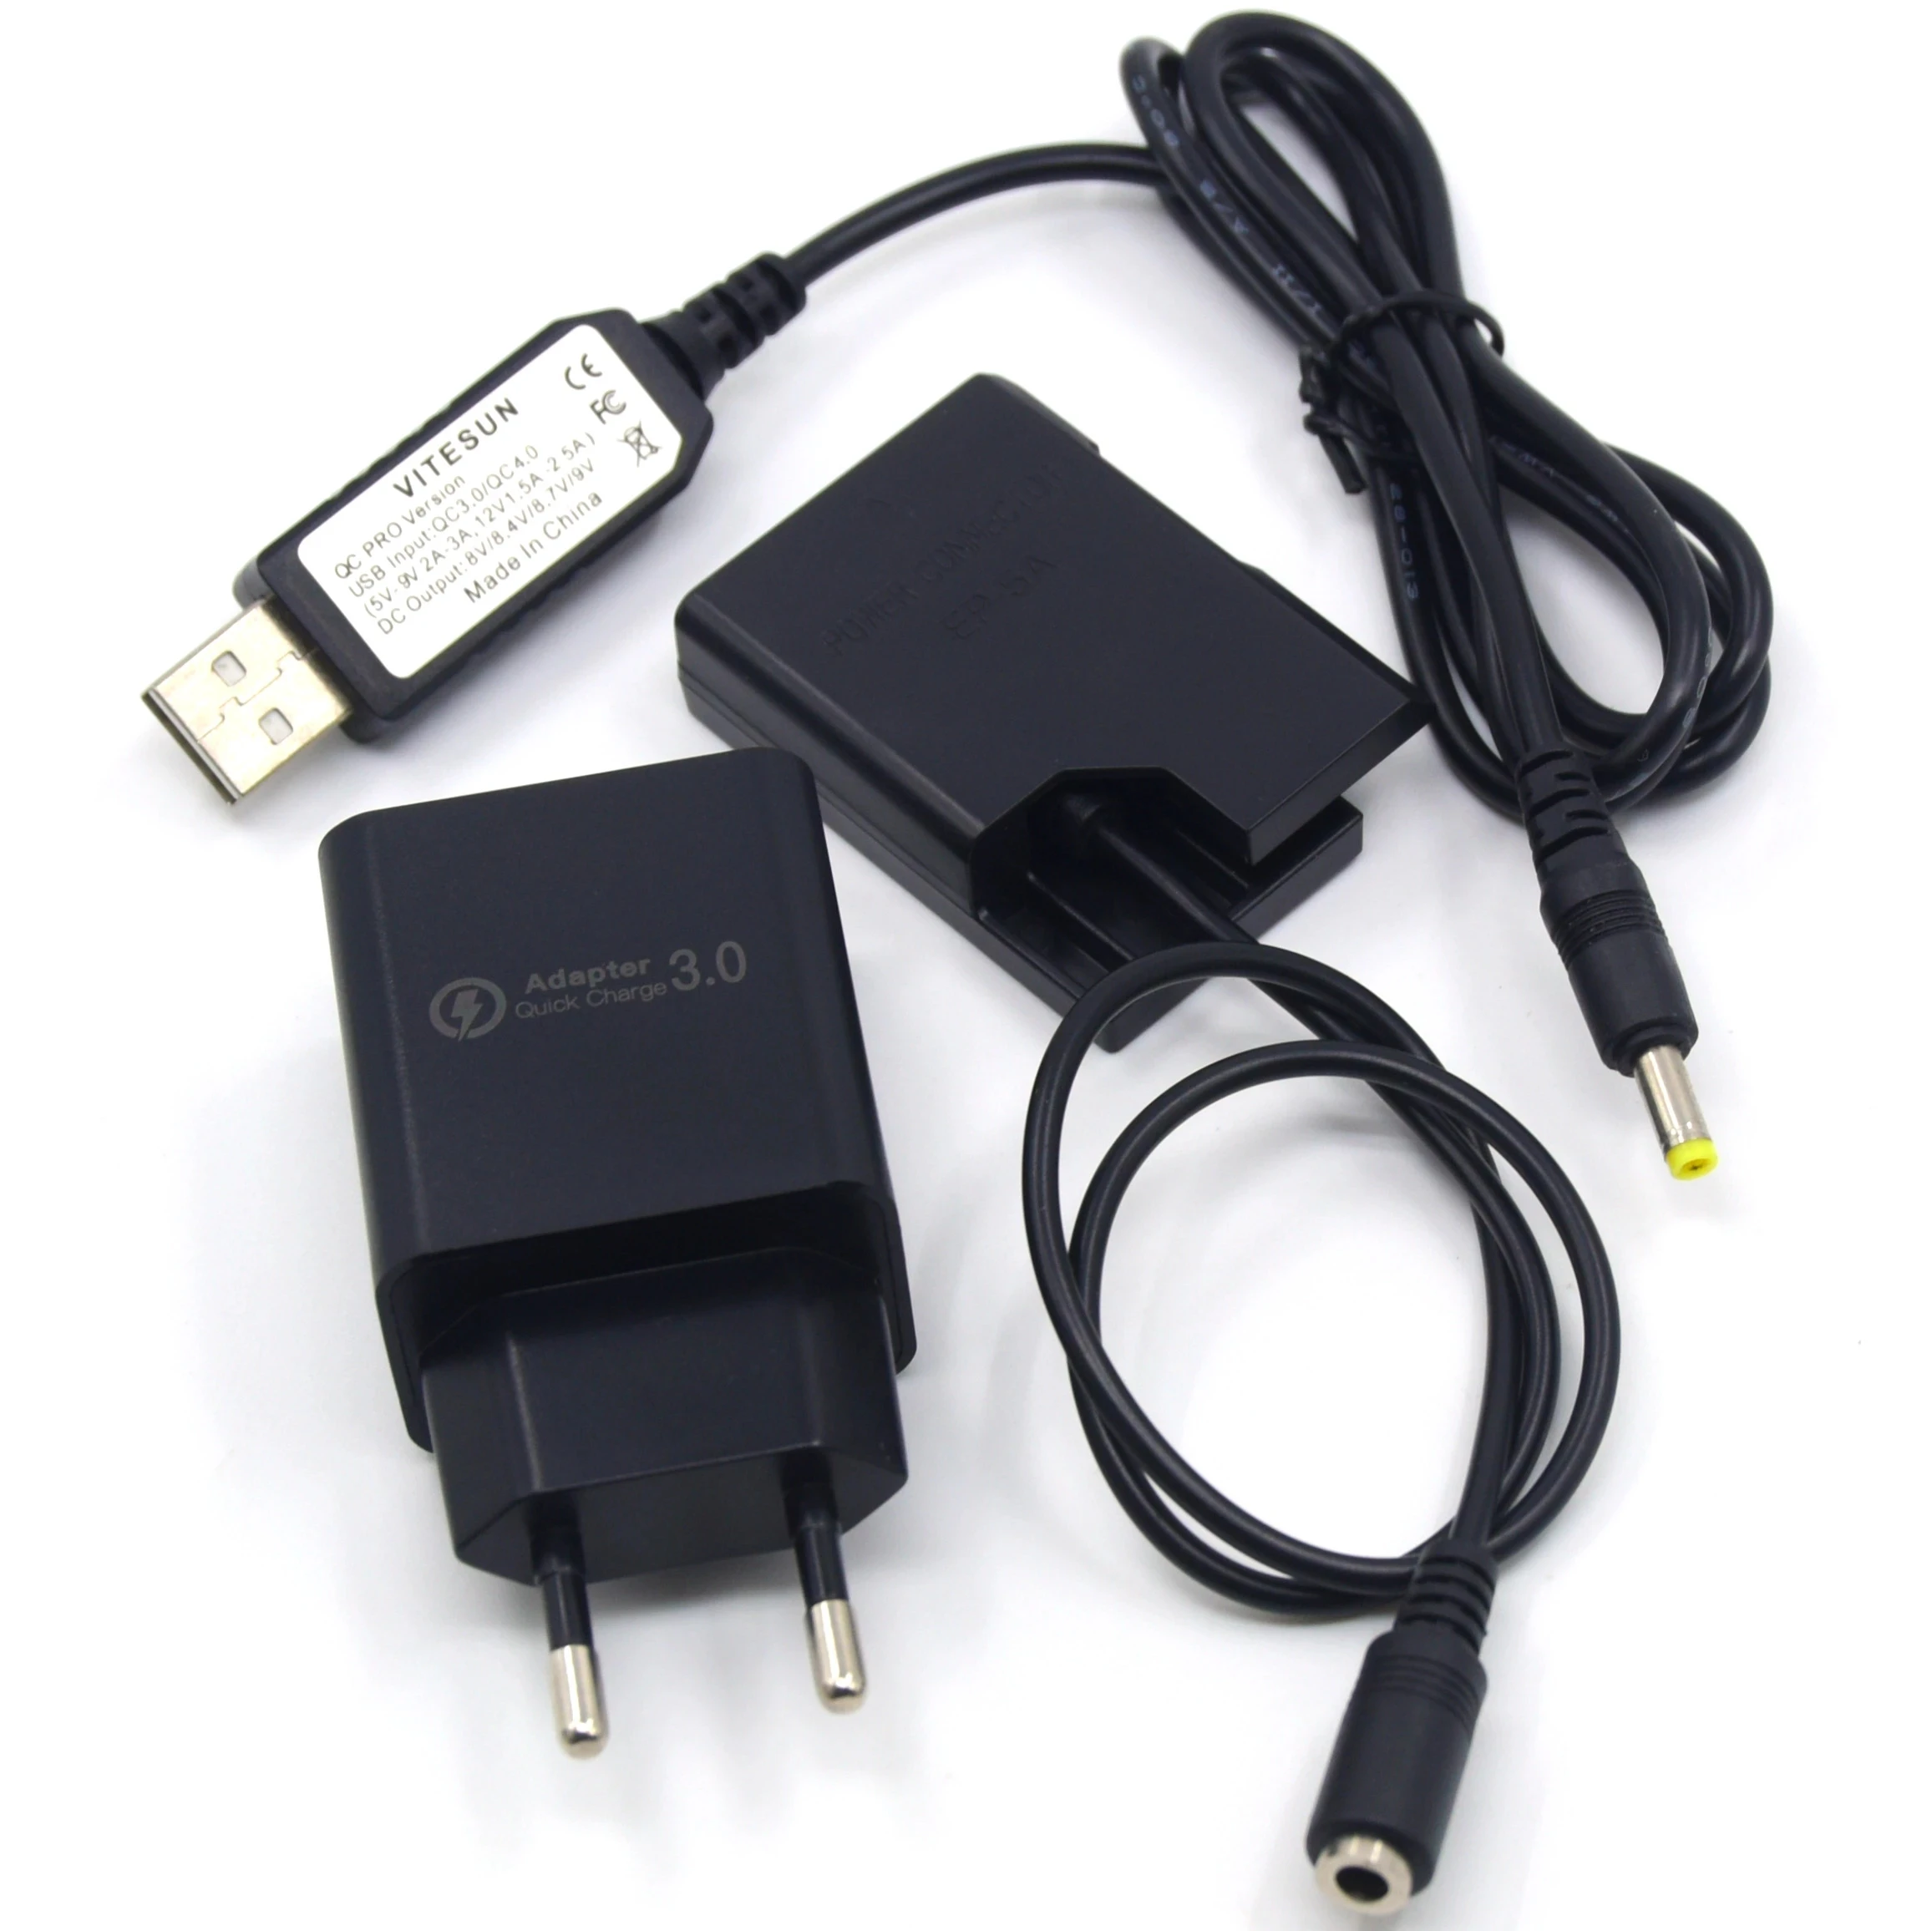 

USB-кабель MH-24 + зарядное устройство 18 Вт + пустая батарея EP-5A EN-EL14 для Nikon P7800 P7100 D5600 D5300 D5200 D5100 D3400 D3300 D320